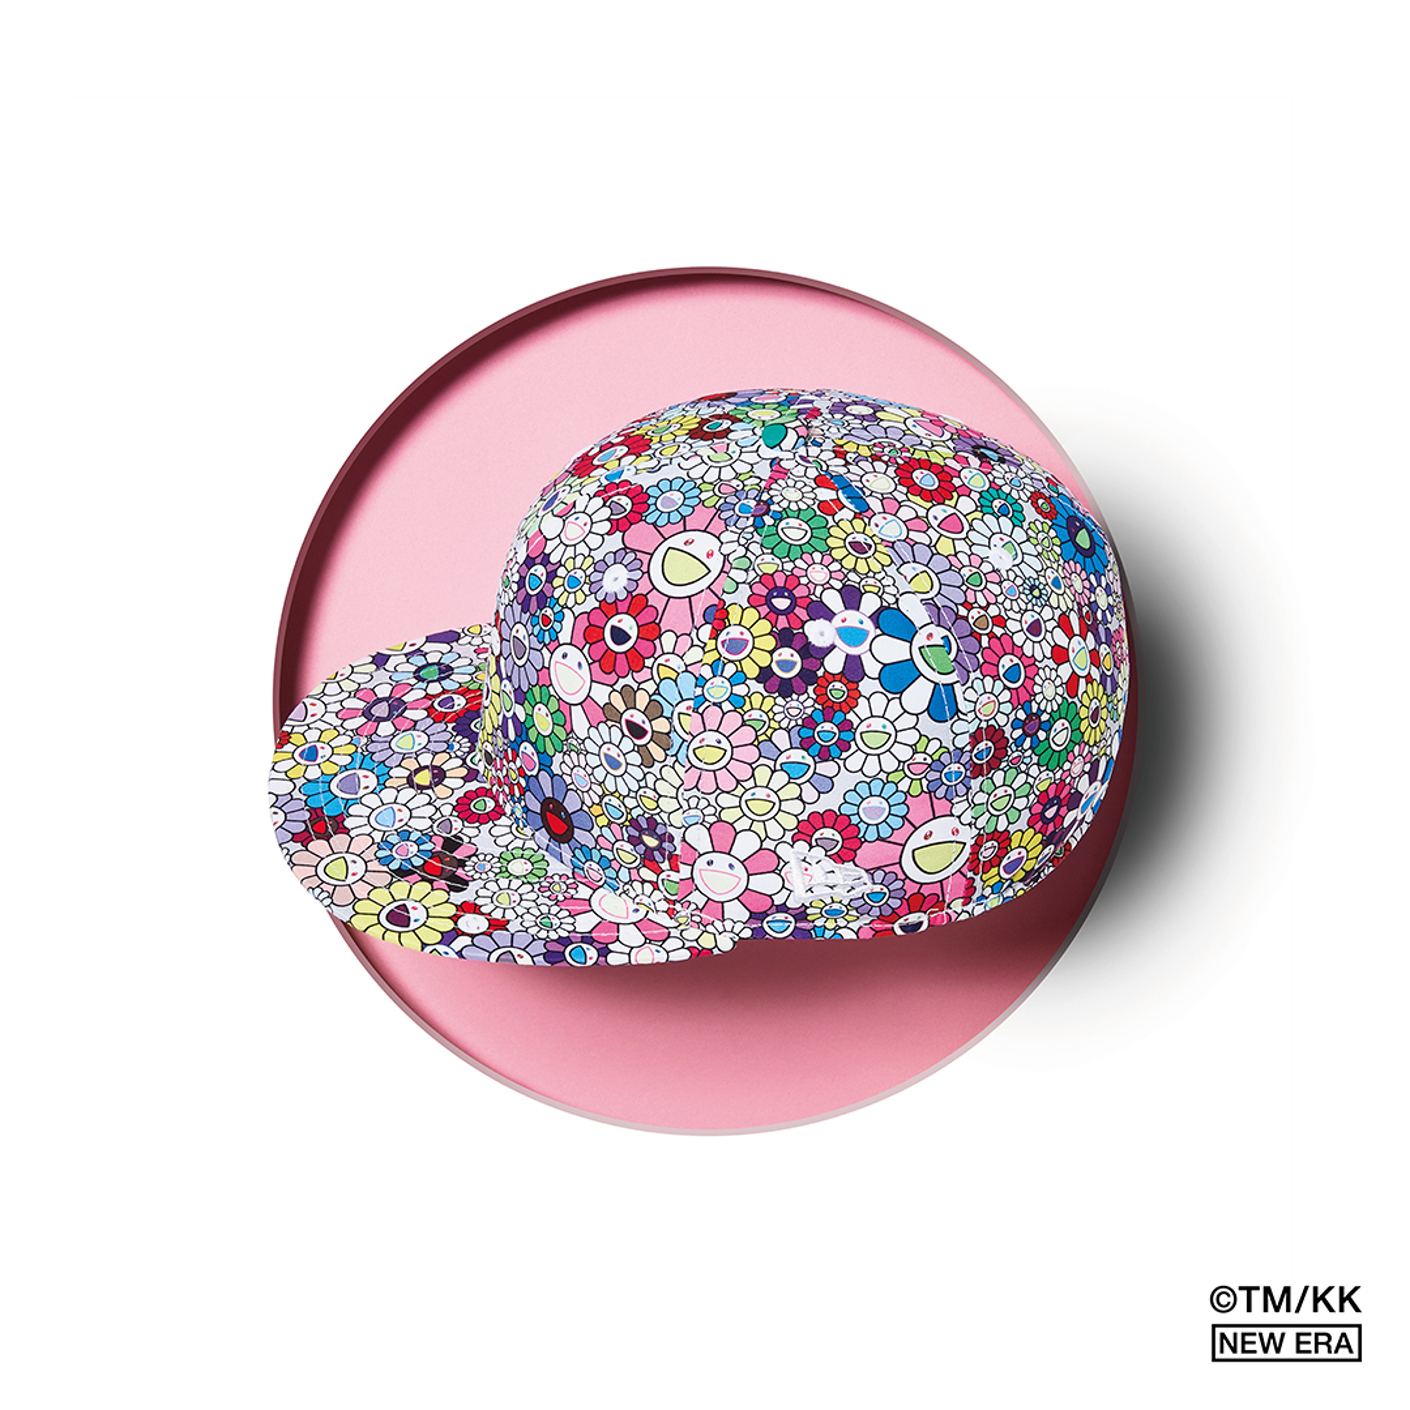 White flower Takashi Murakami x New Era cap with pink background